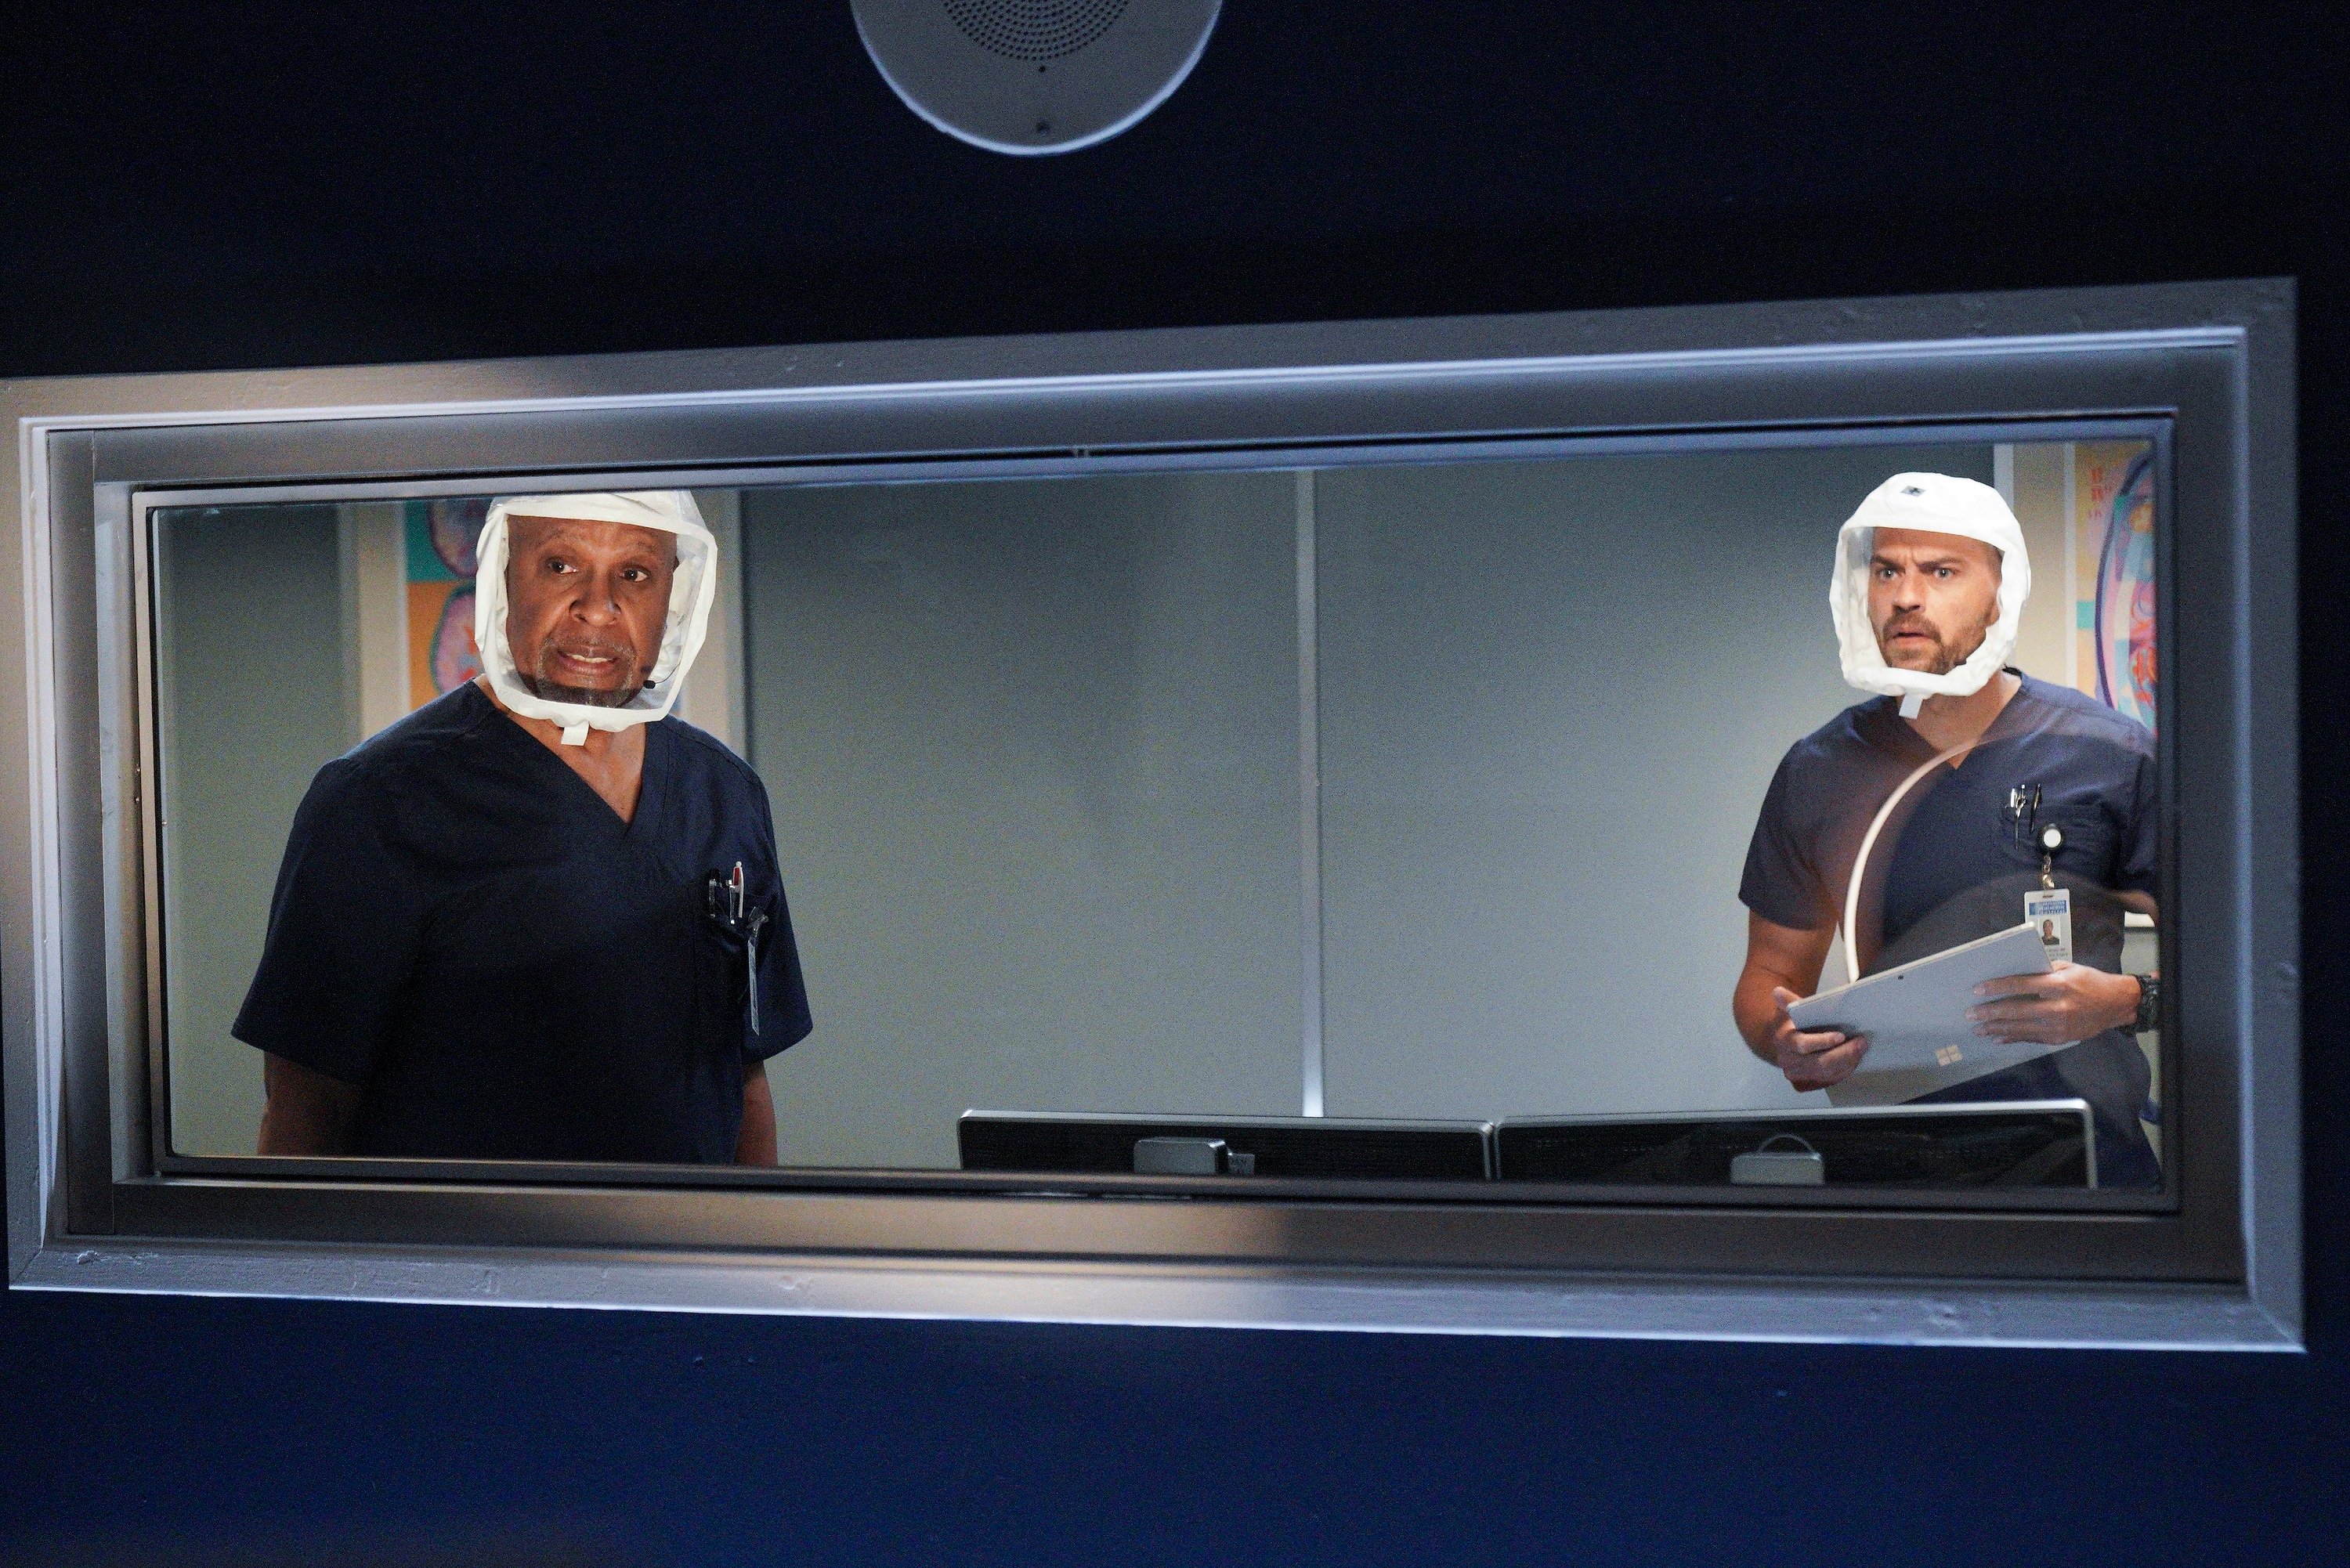 Greys Anatomy new episode with Richard Webber and Jackson Avery